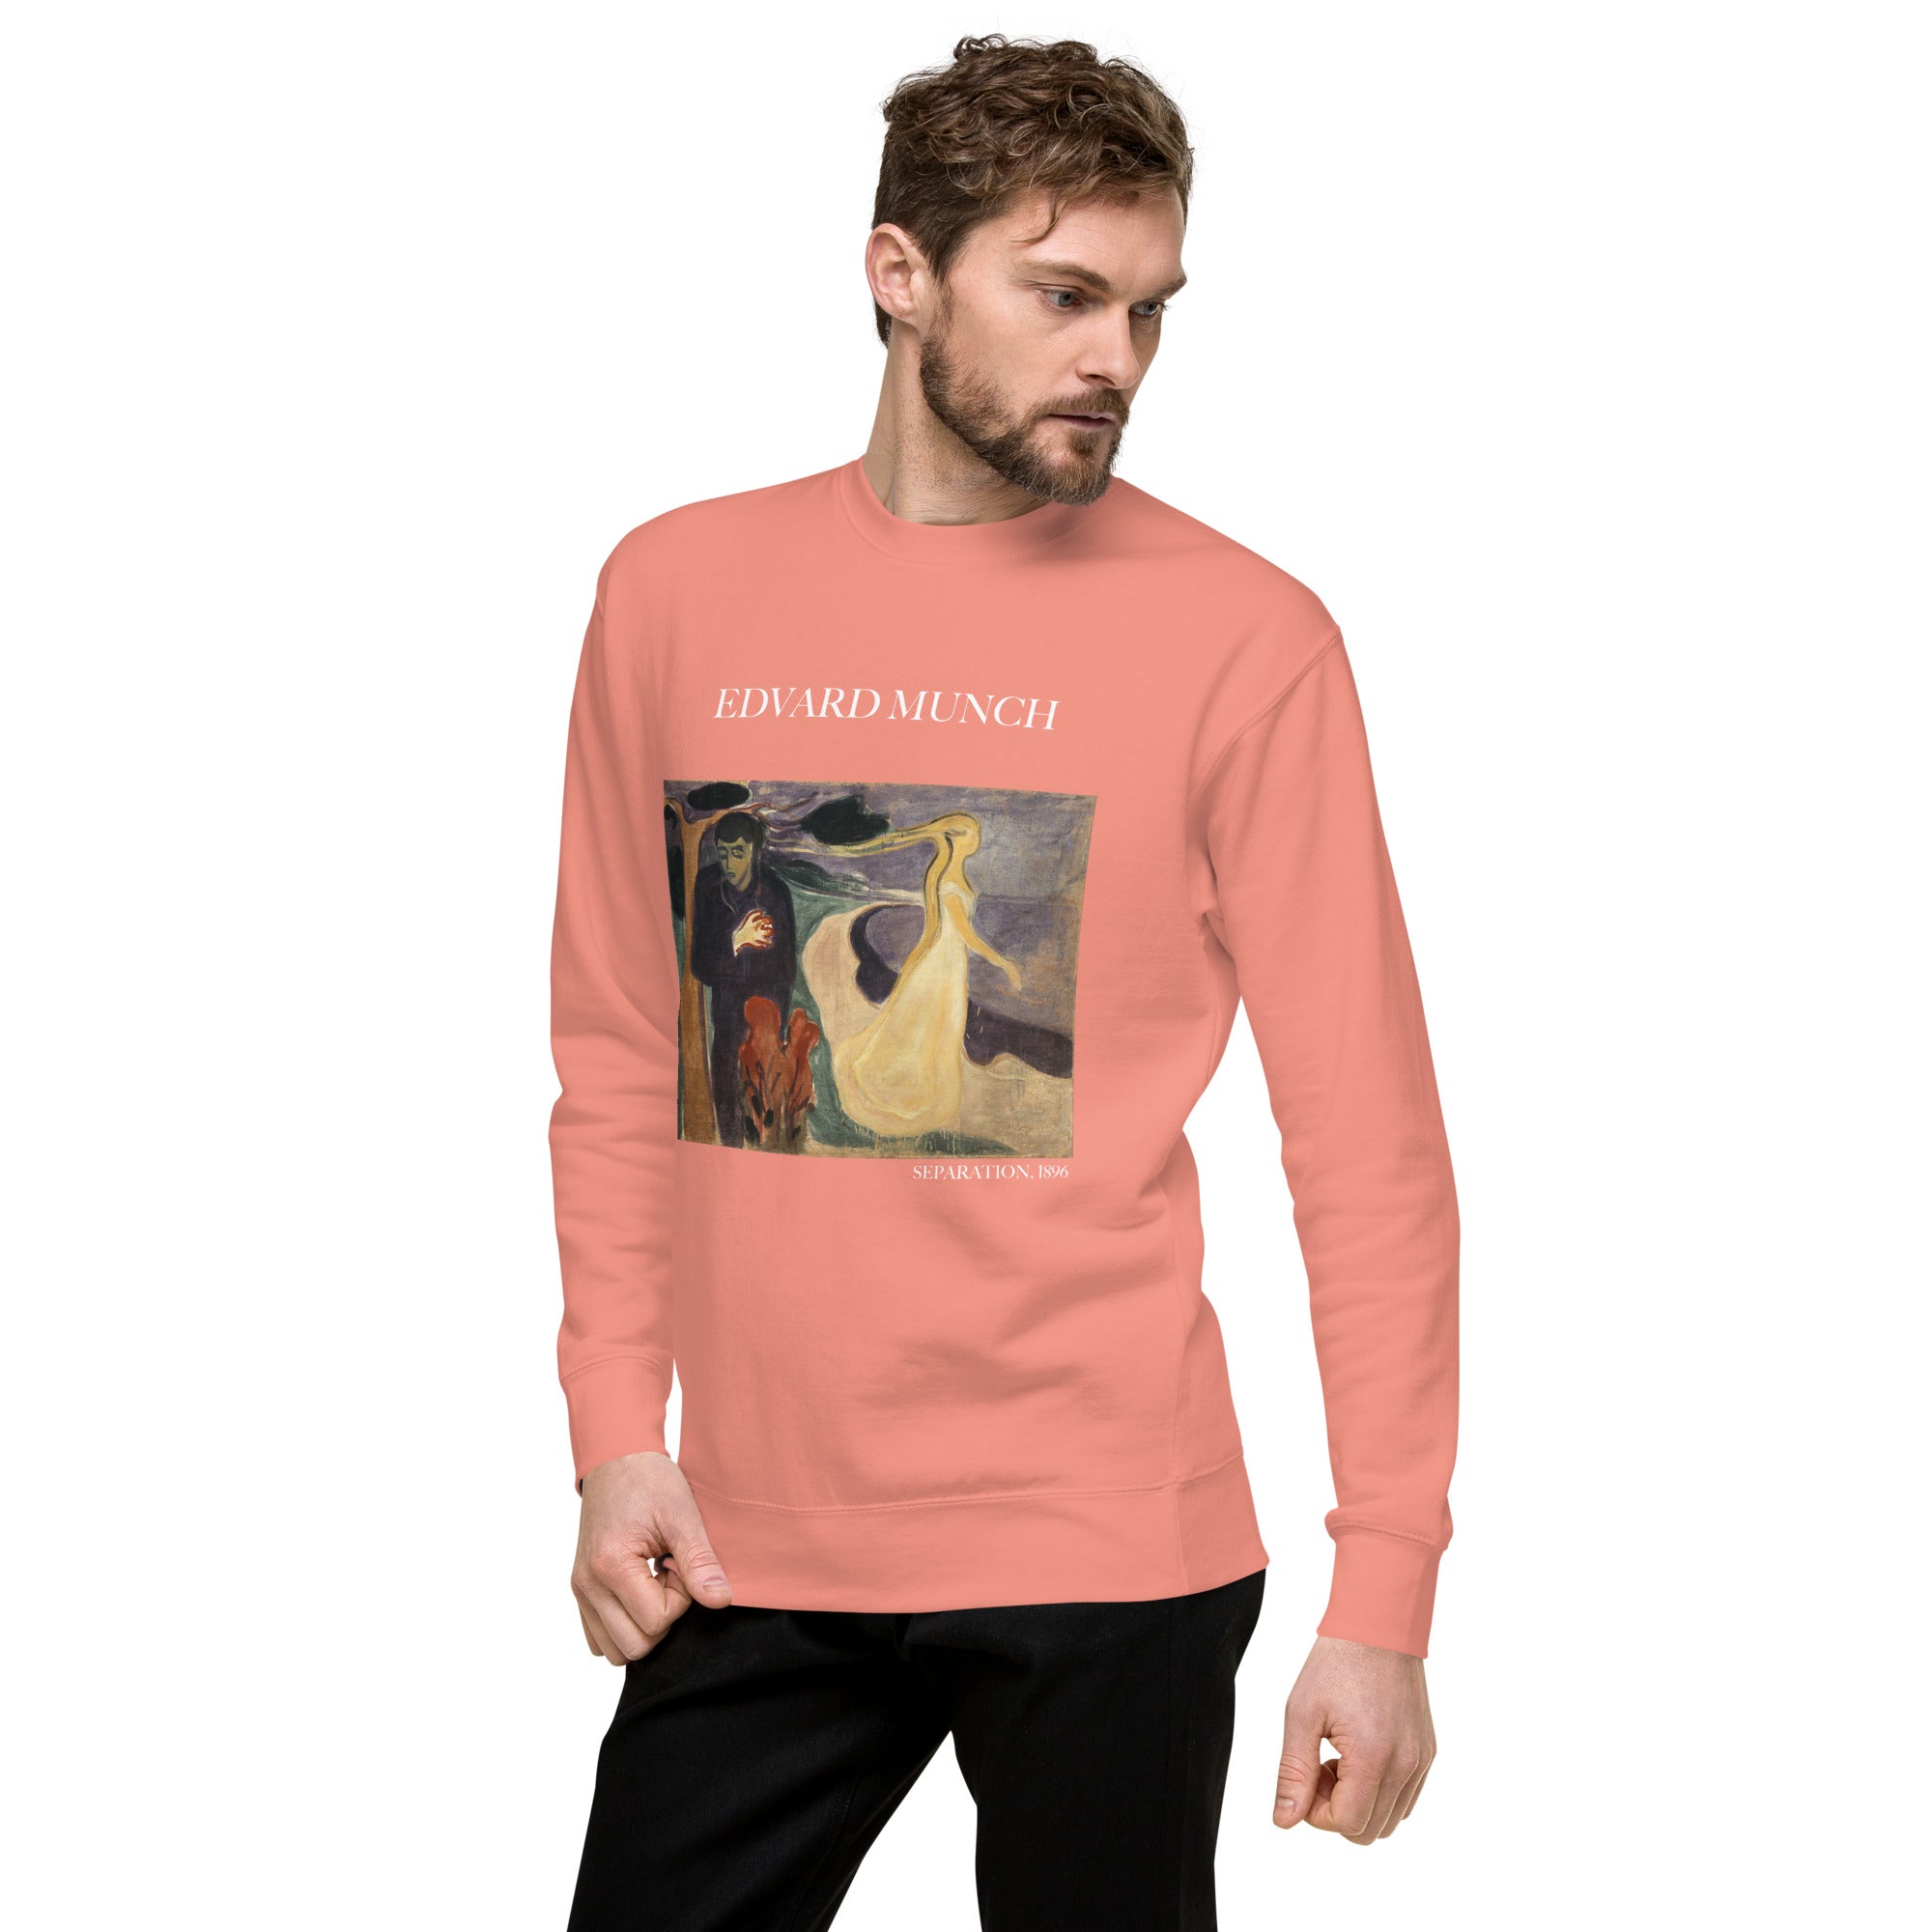 Sweatshirt mit berühmtem Gemälde „Separation“ von Edvard Munch, Premium-Unisex-Sweatshirt